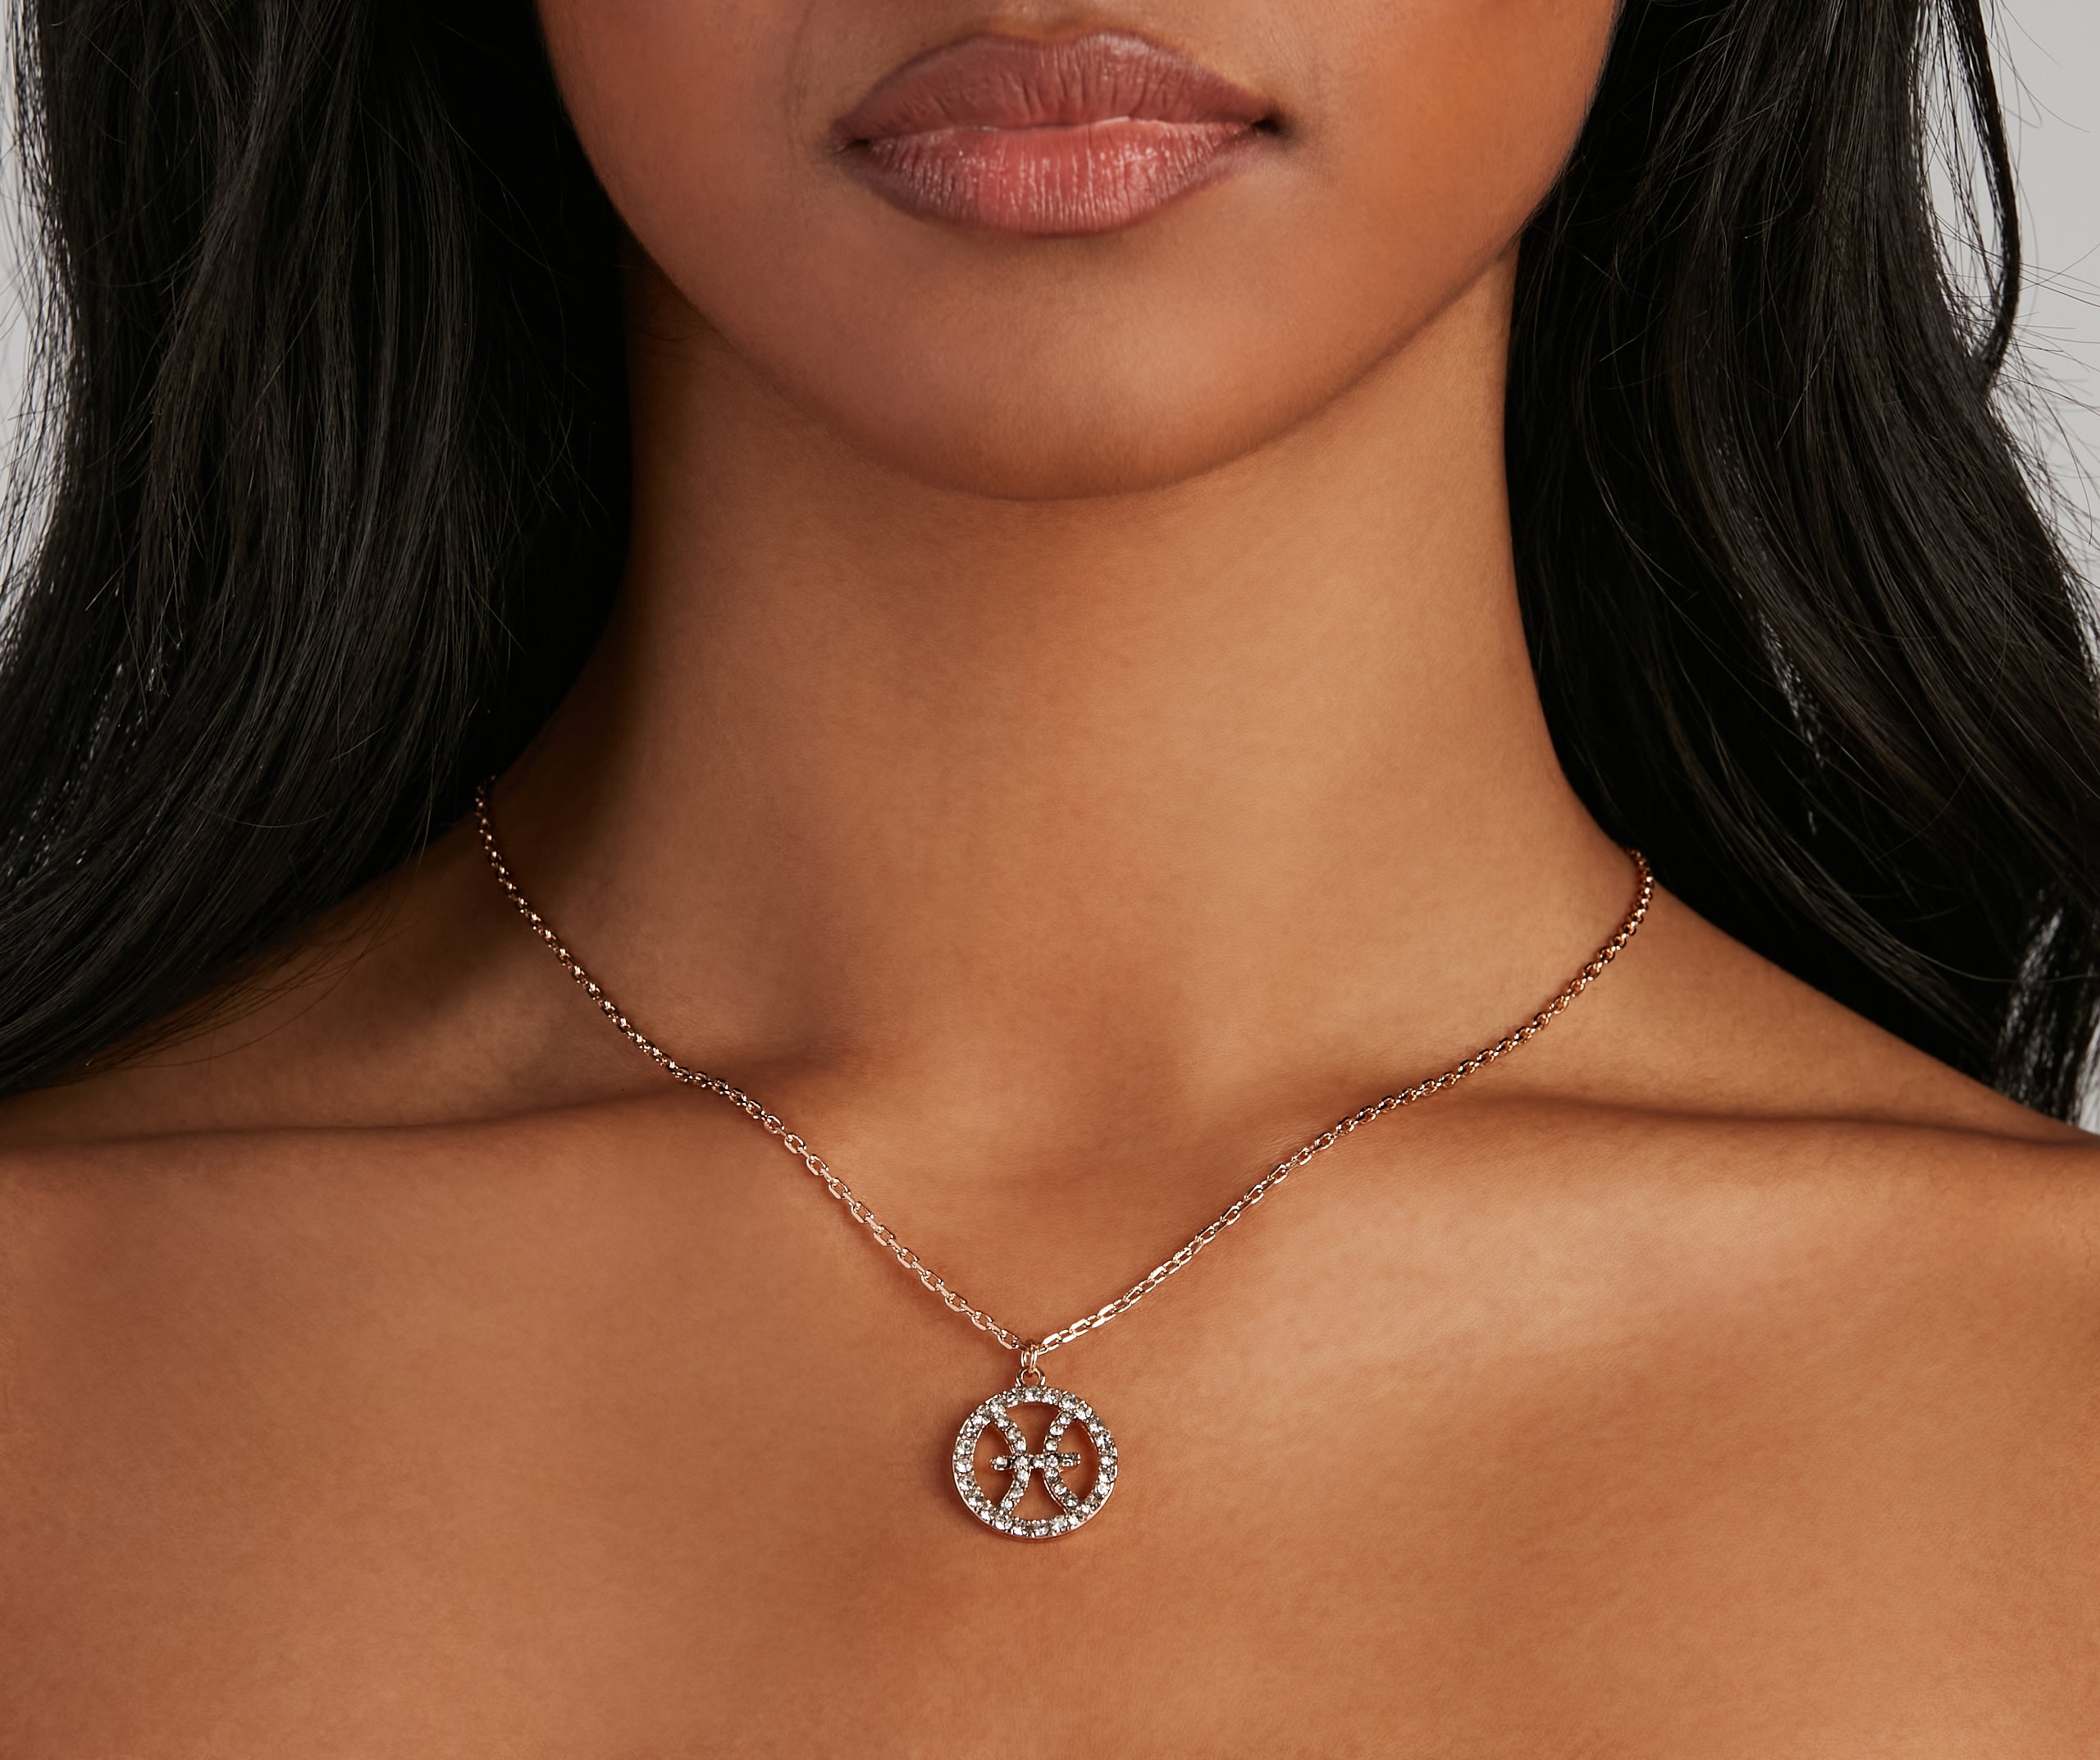 Zodiac Glam Rhinestone Necklace